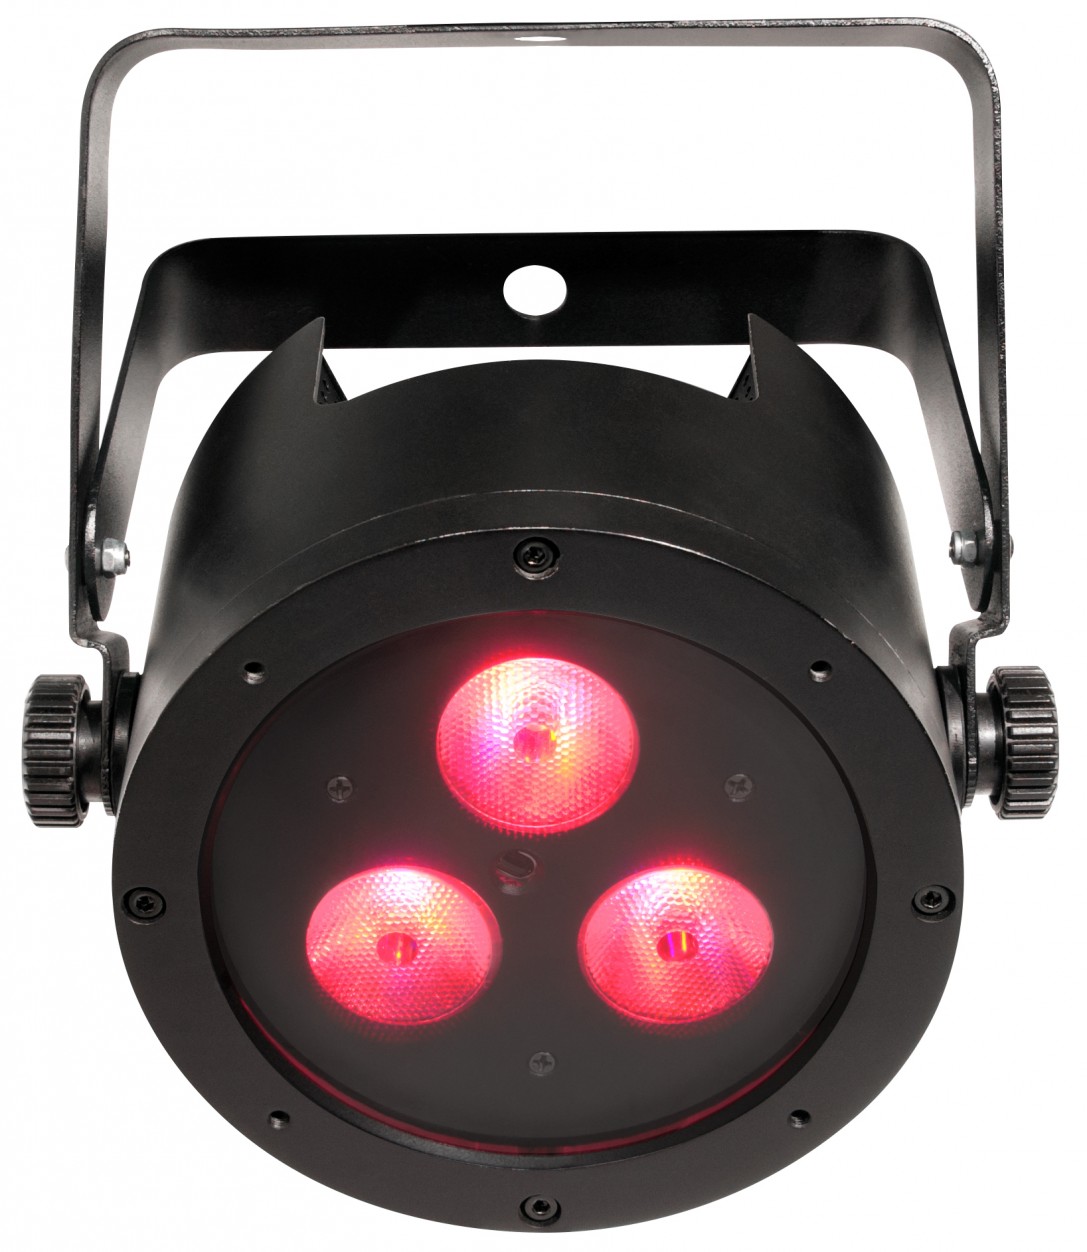 Chauvet Slim Par Hex 3 IRC светодиодный прожектор направленного света